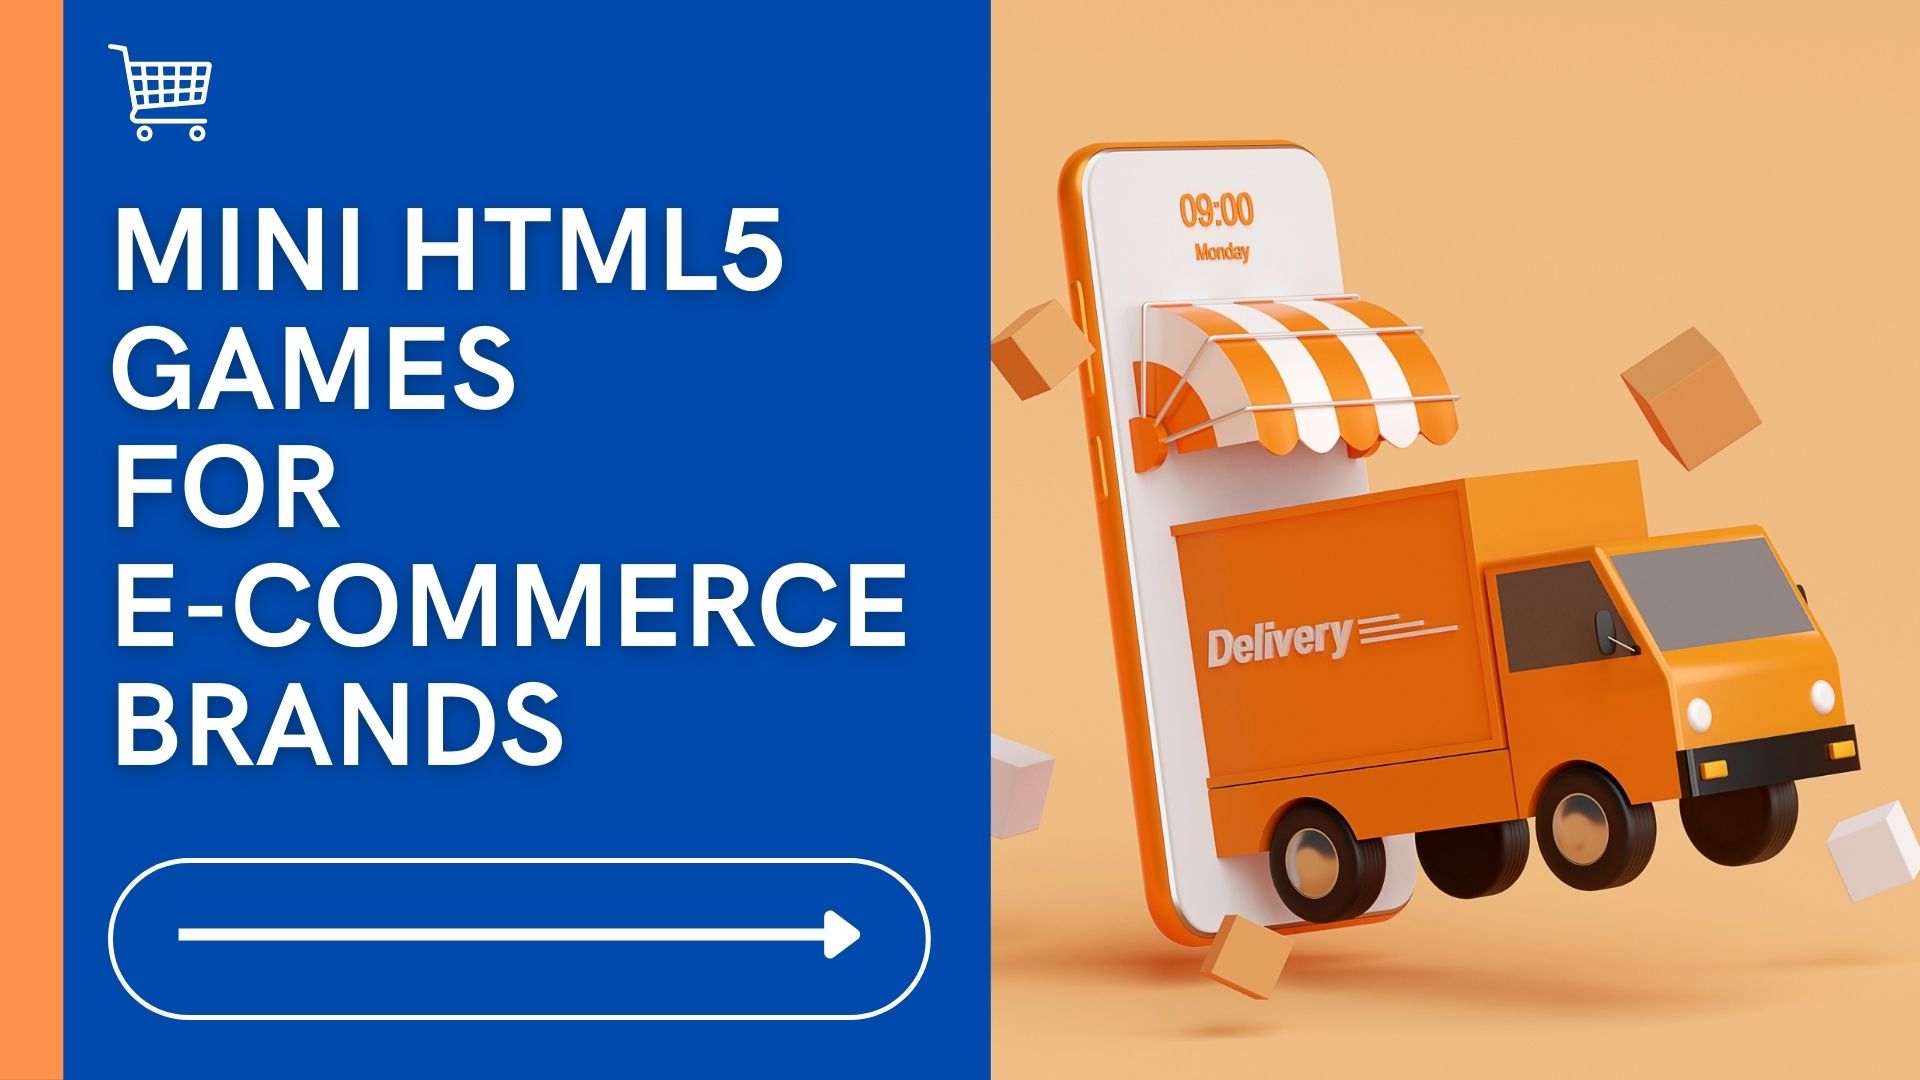 Mini HTML5 Games For E-Commerce Brands